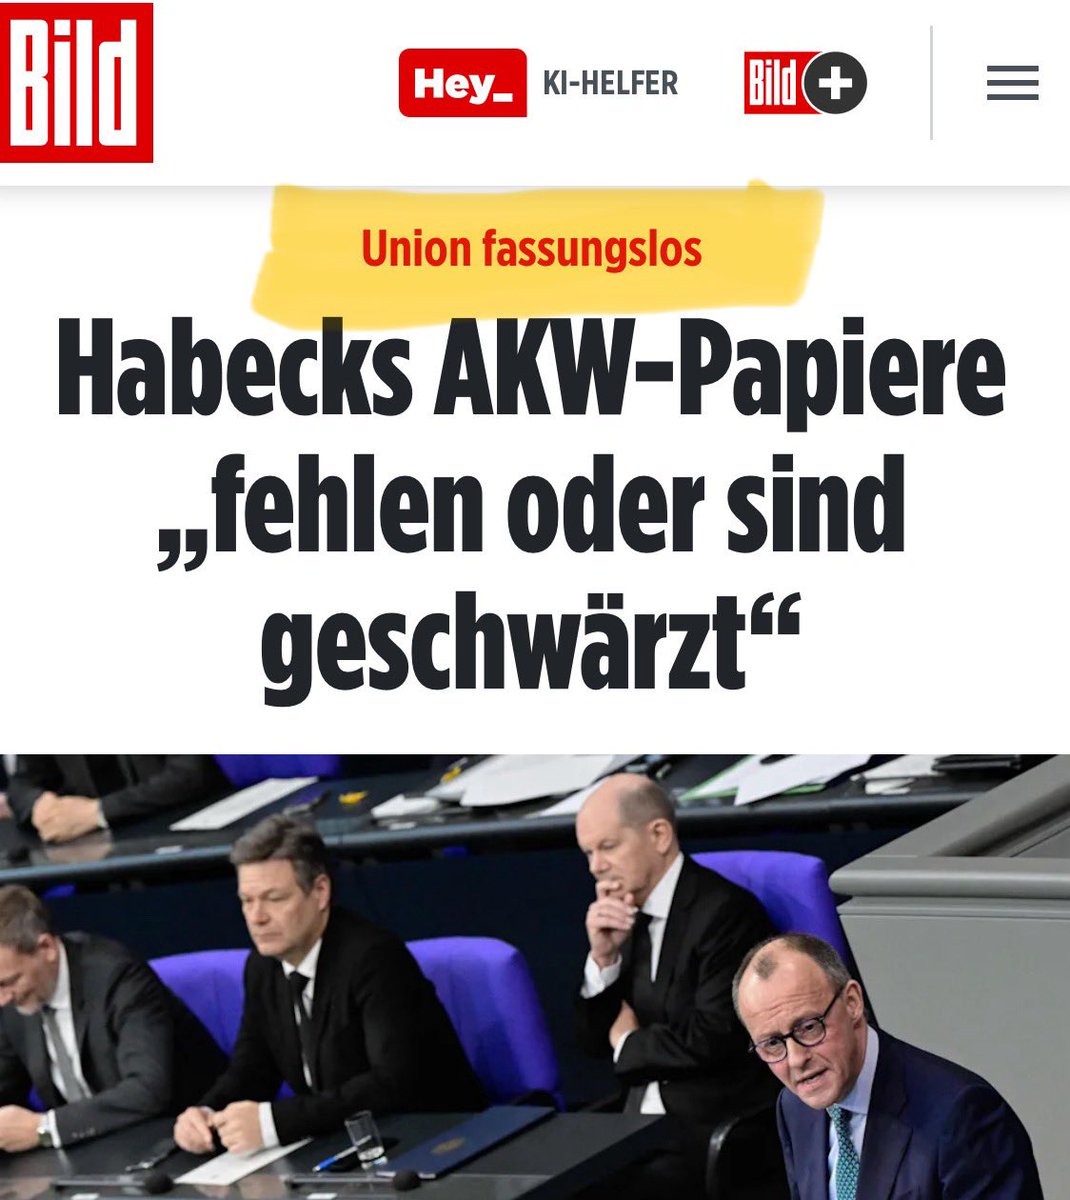 Untersuchungsausschuss incoming?
#AKWfiles #Habeck

Link: m.bild.de/politik/inland…